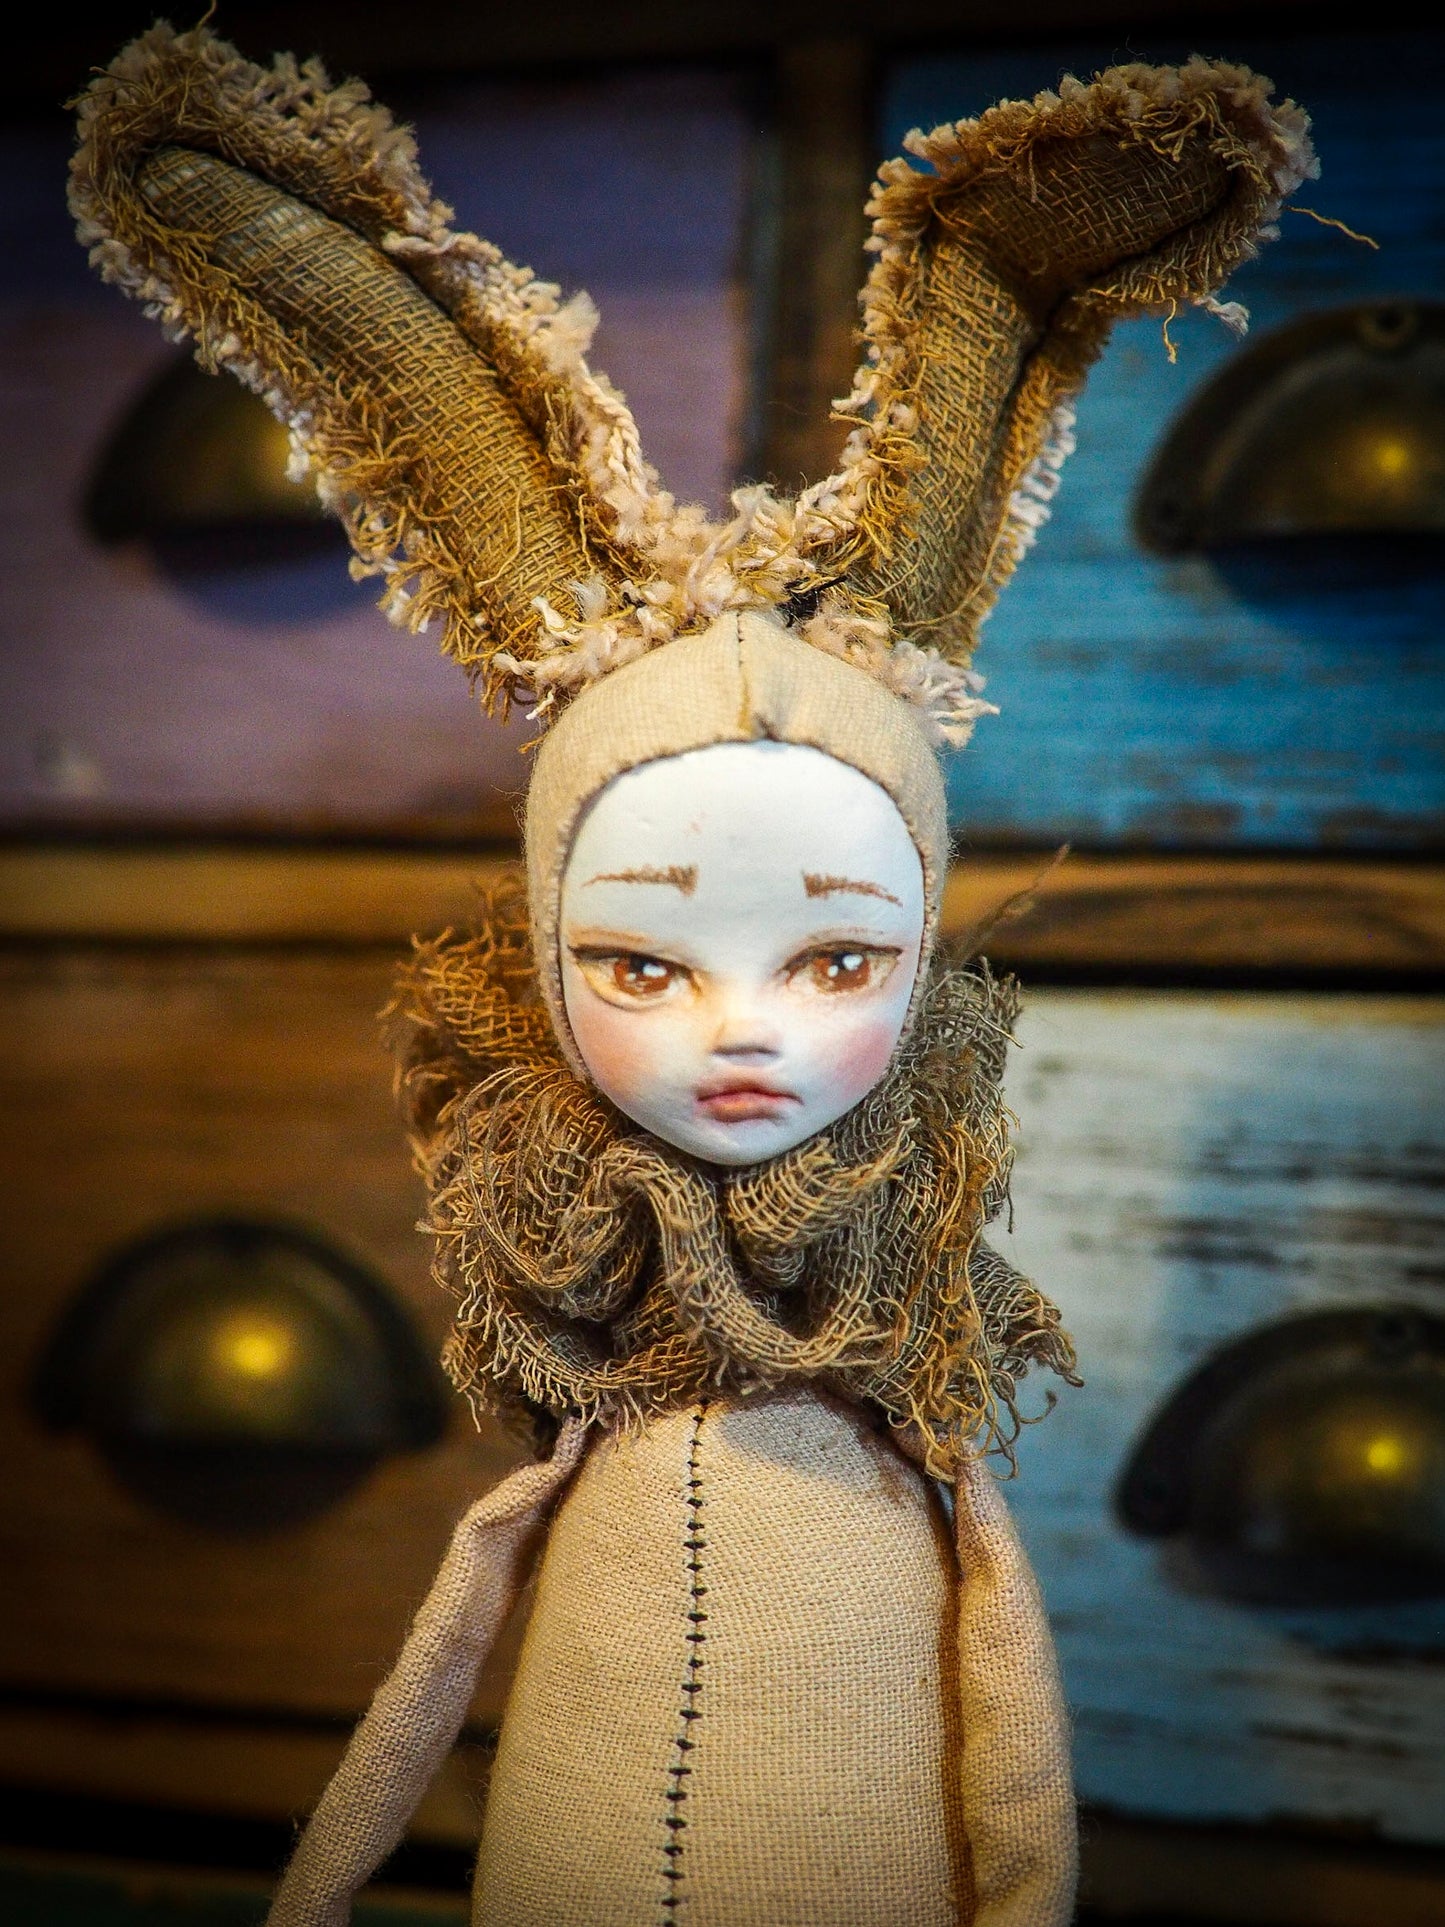 THE BUNNY - An original woodlands handmade art doll by Danita Art